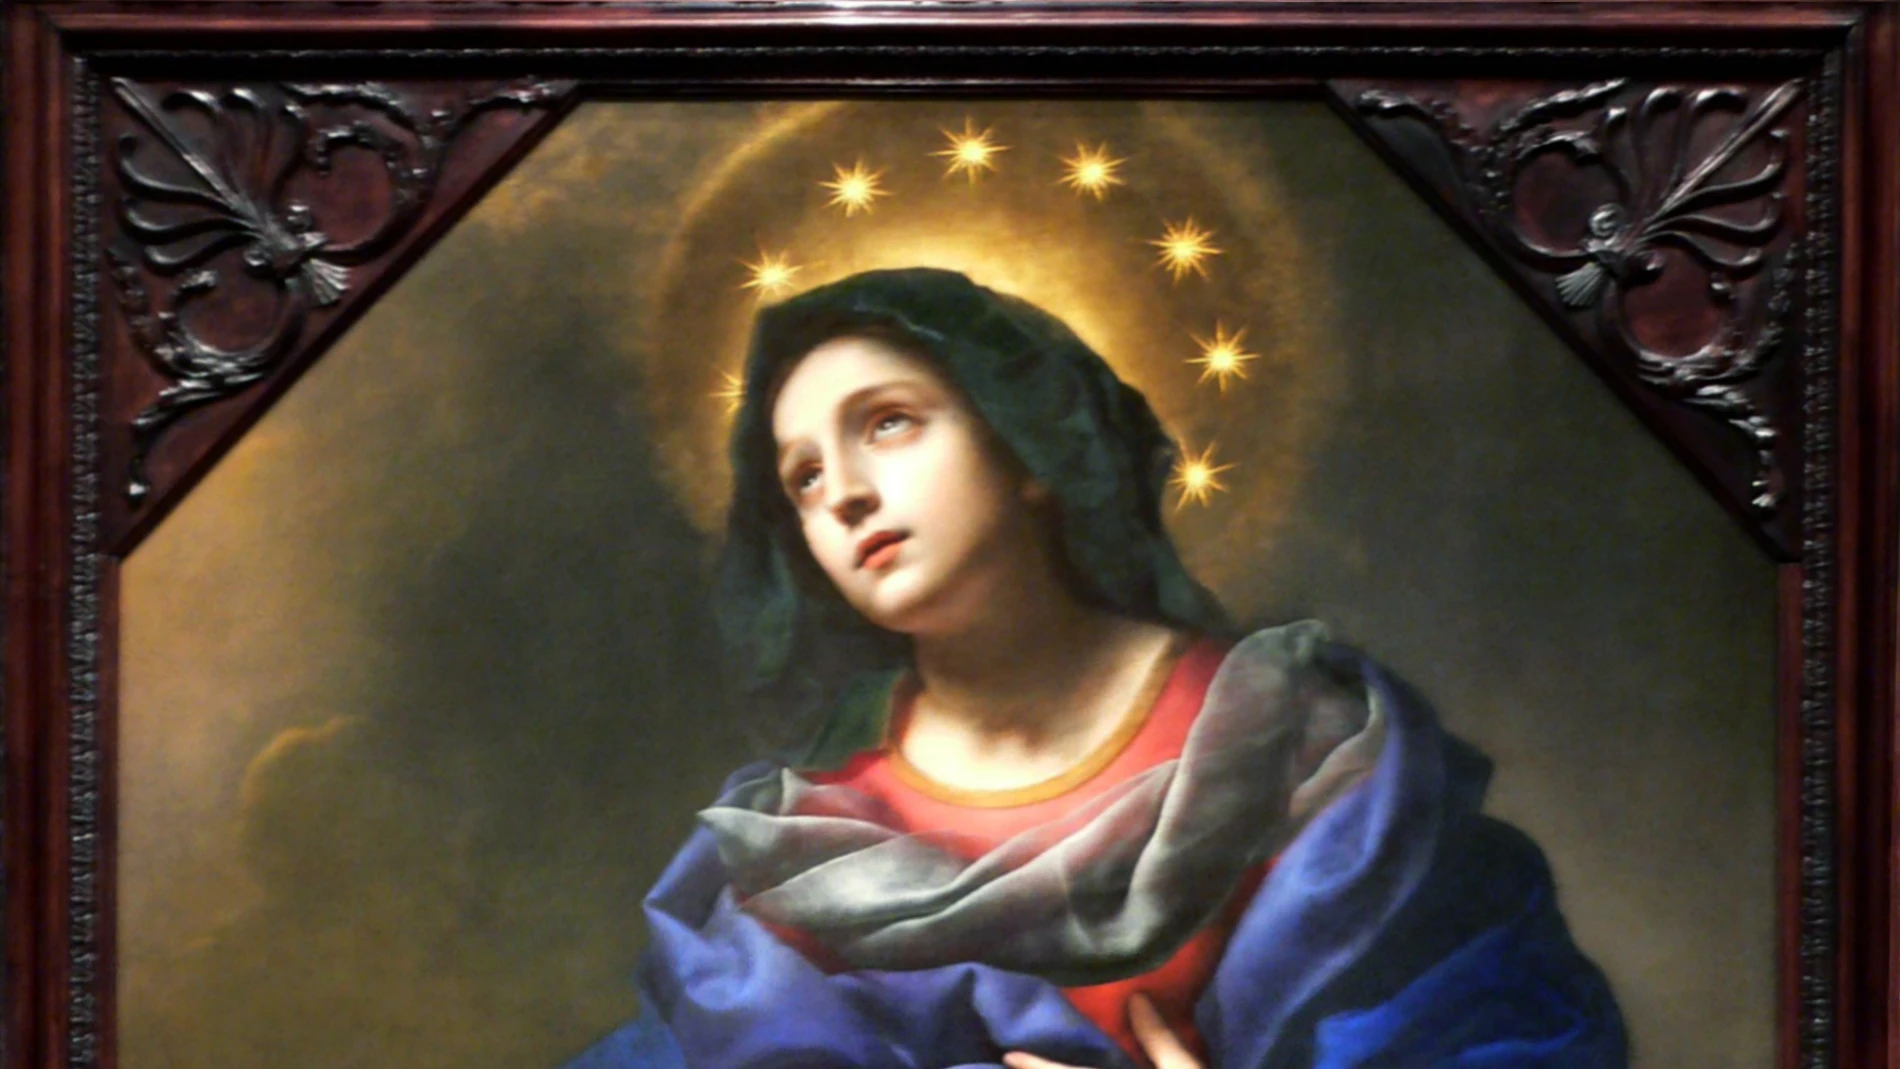 Nuestra Señora de los Ángeles es la Virgen María, madre de Jesús